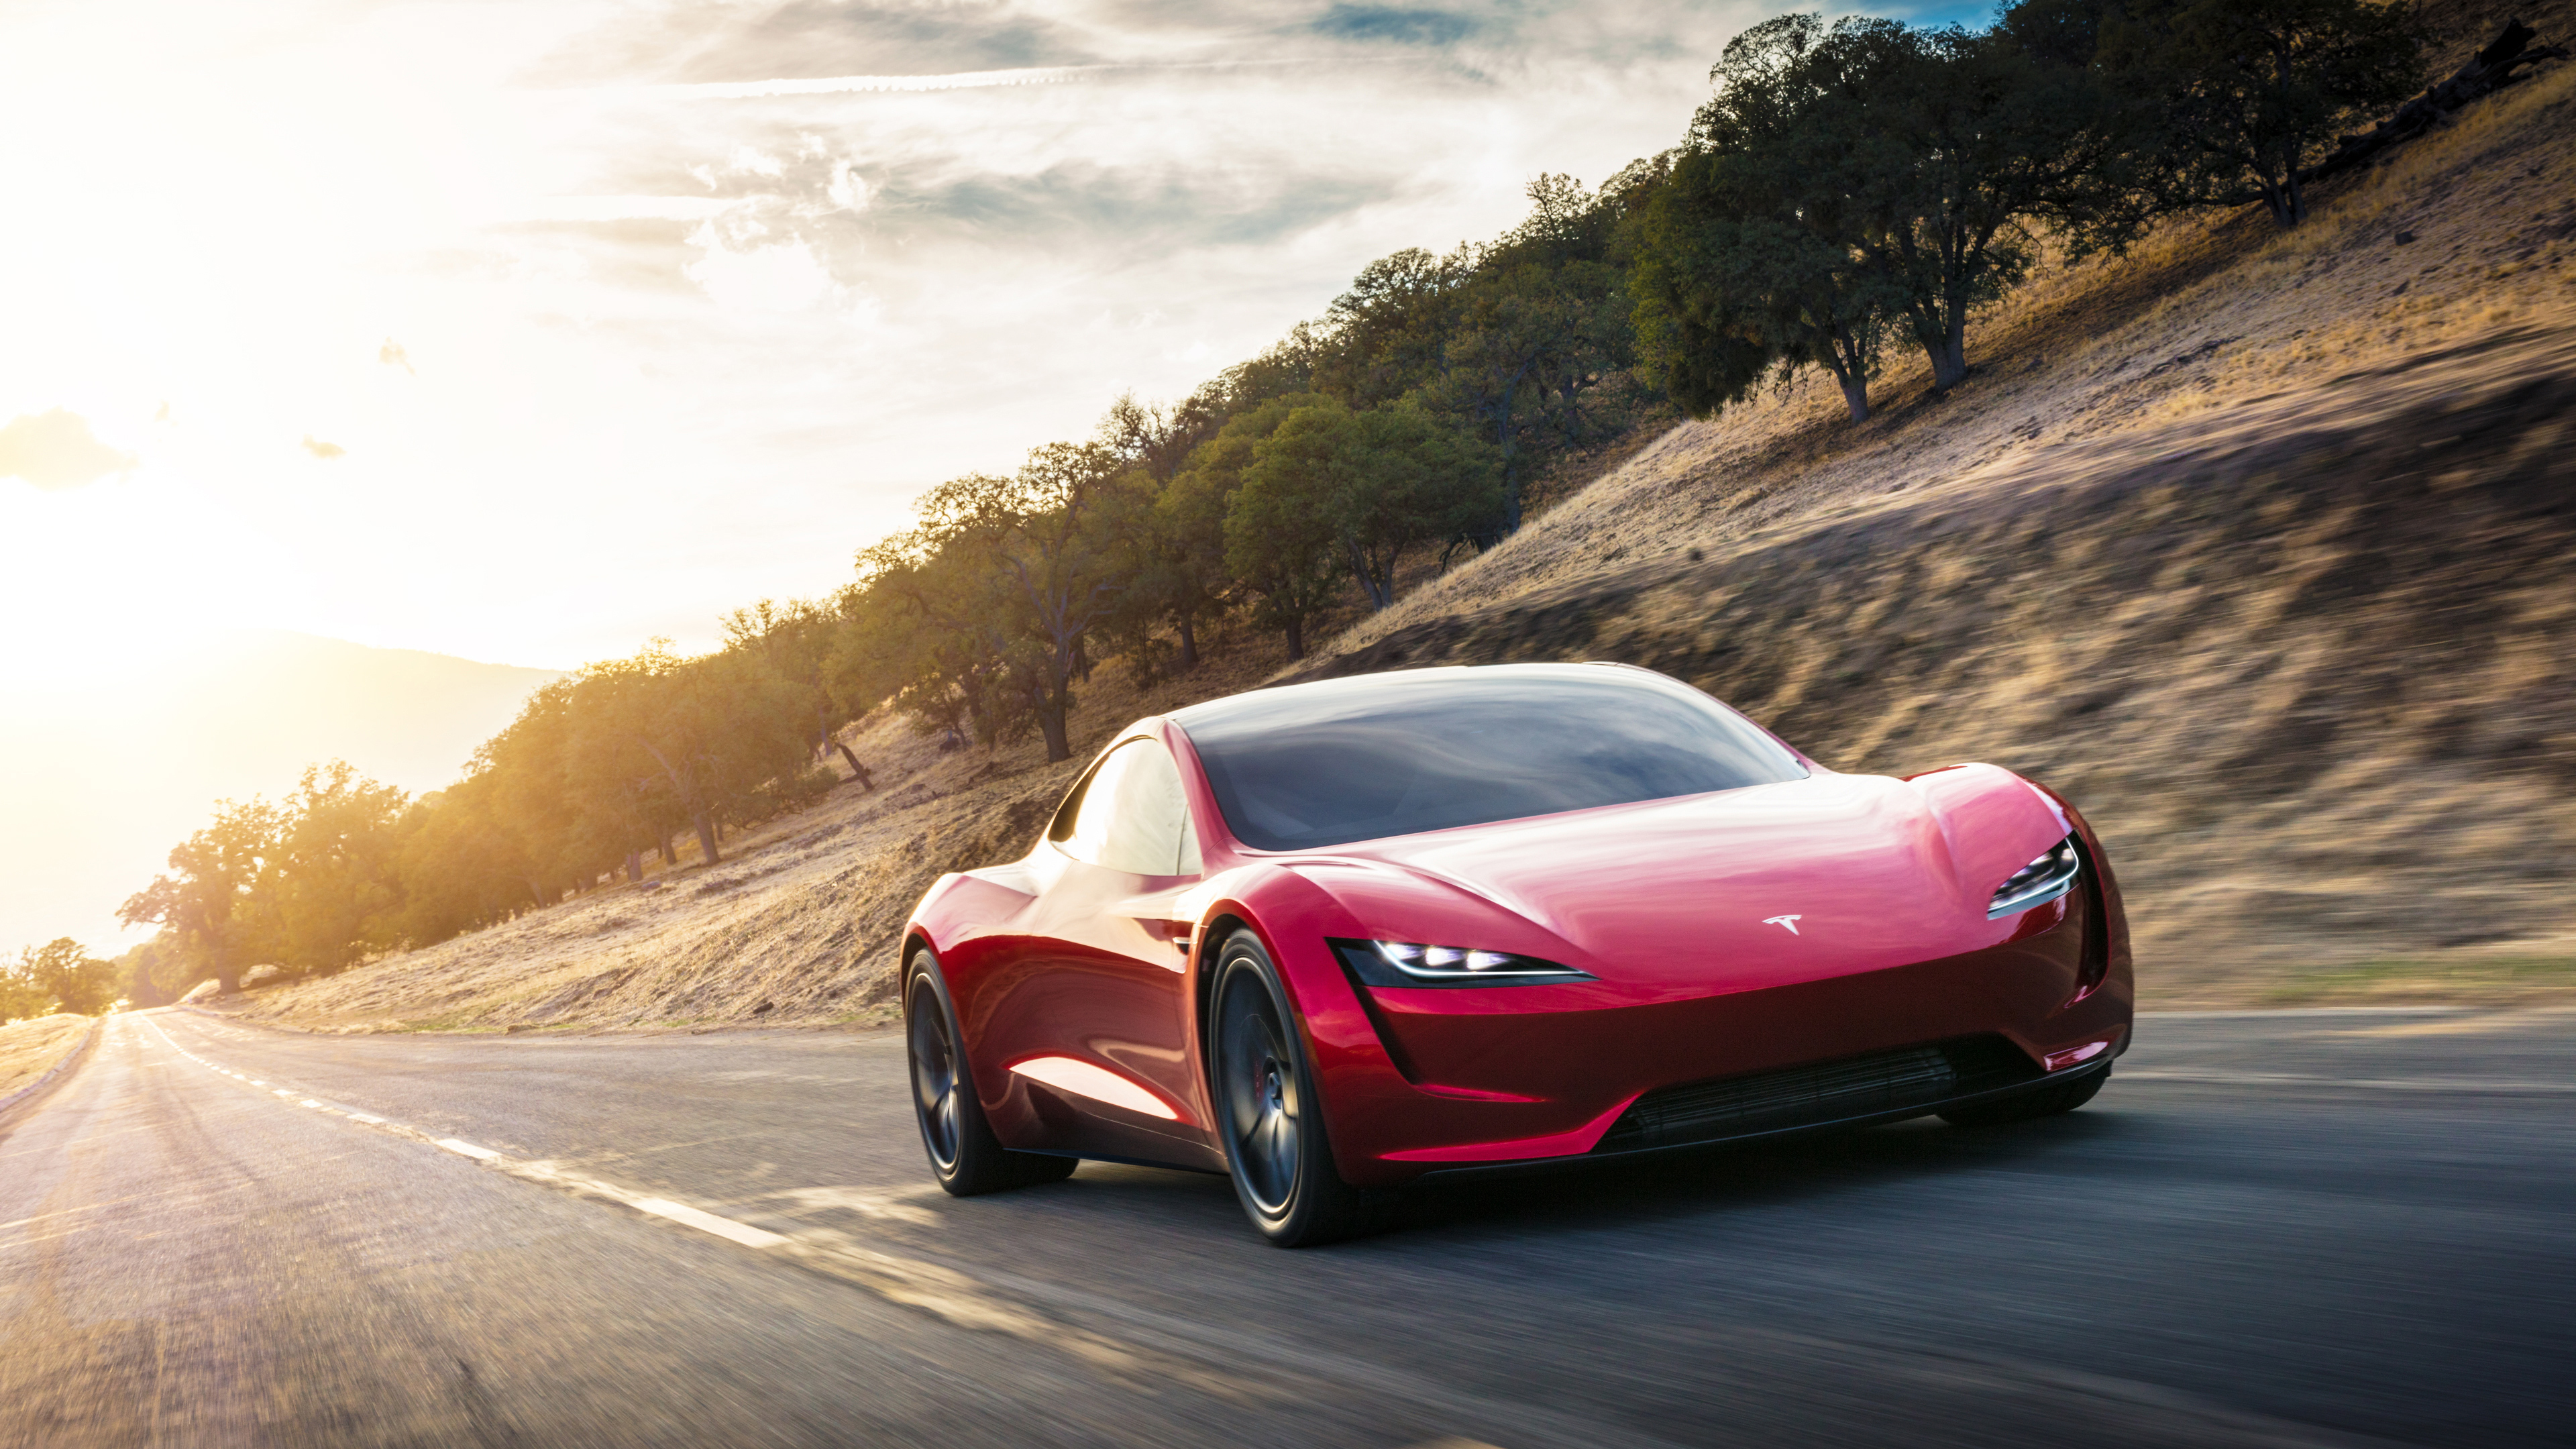 2020 Tesla Roadster 4k - Tesla Roadster 2020 4k , HD Wallpaper & Backgrounds